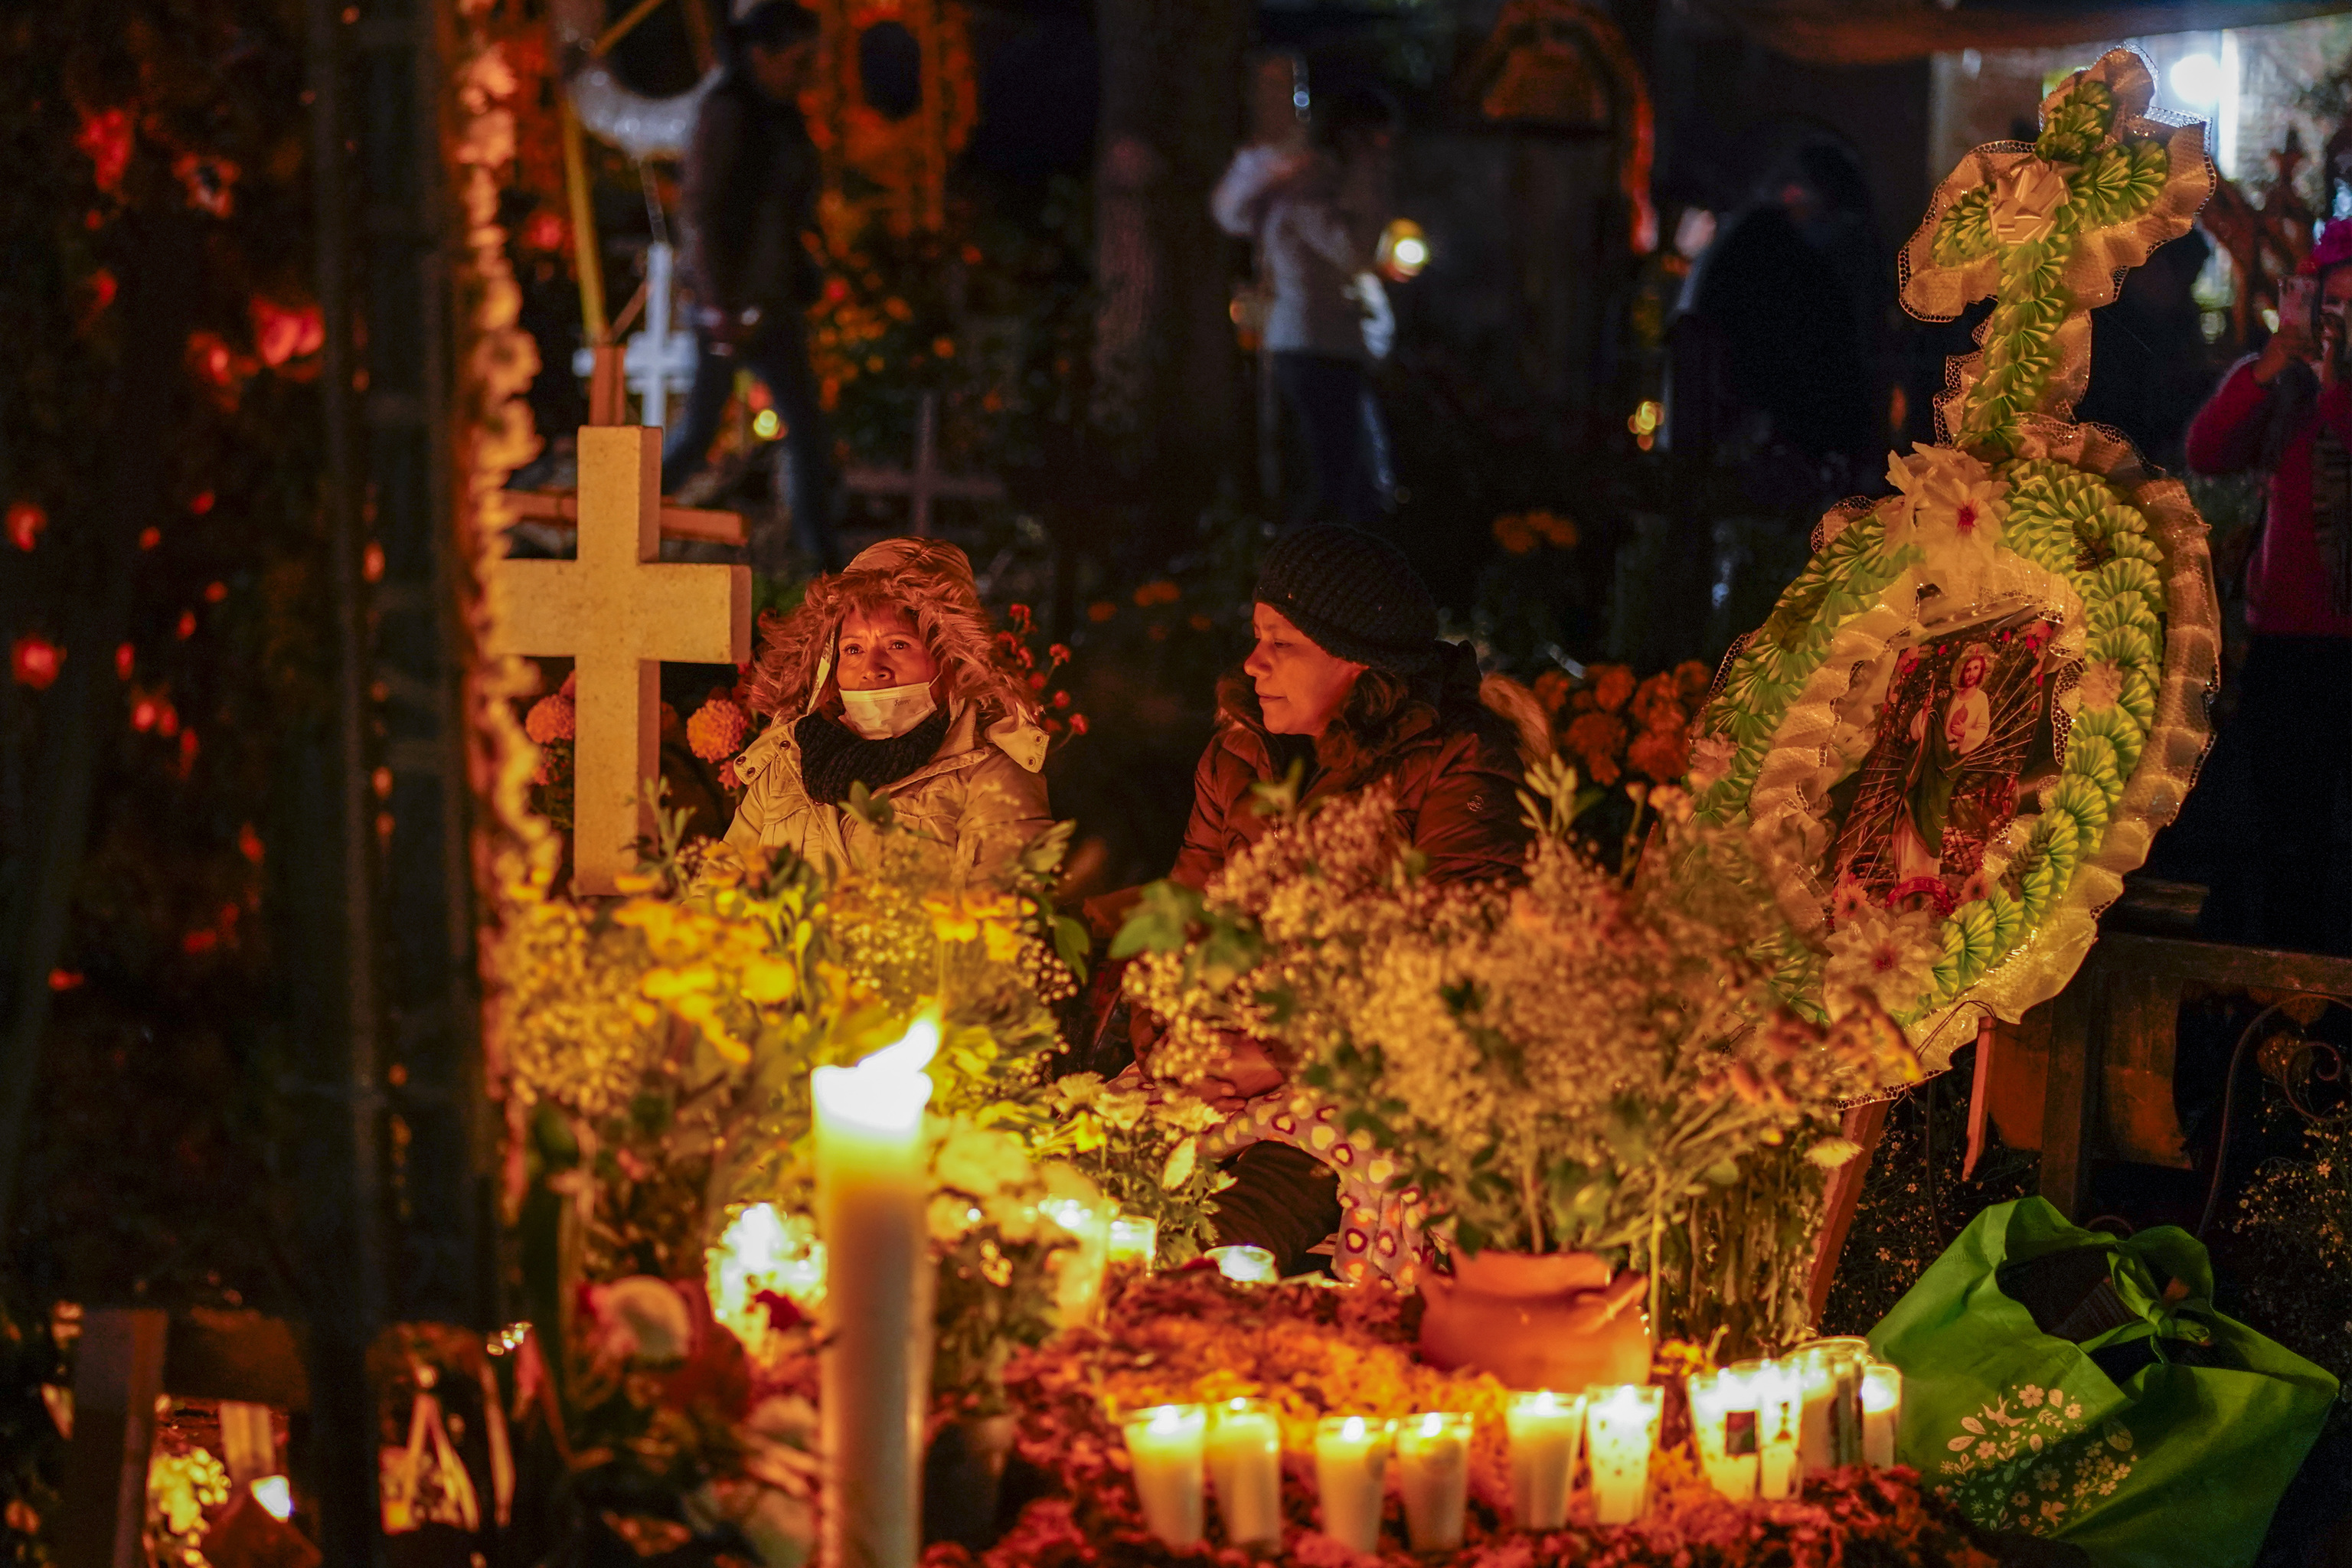 Familiares velan junto a las tumbas durante las festividades del Día de los Muertos en el cementerio de Tzintzuntzan en Michocan, México, el domingo 31 de octubre de 2021. En una tradición que coincide con el Día de Todos los Santos y el Día de los Fieles Difuntos, los días 1 y 2 de noviembre, las familias decoran las tumbas de sus familiares fallecidos con caléndulas y velas, y pasan la noche en el cementerio, comiendo y bebiendo mientras acompañan a sus seres queridos fallecidos.